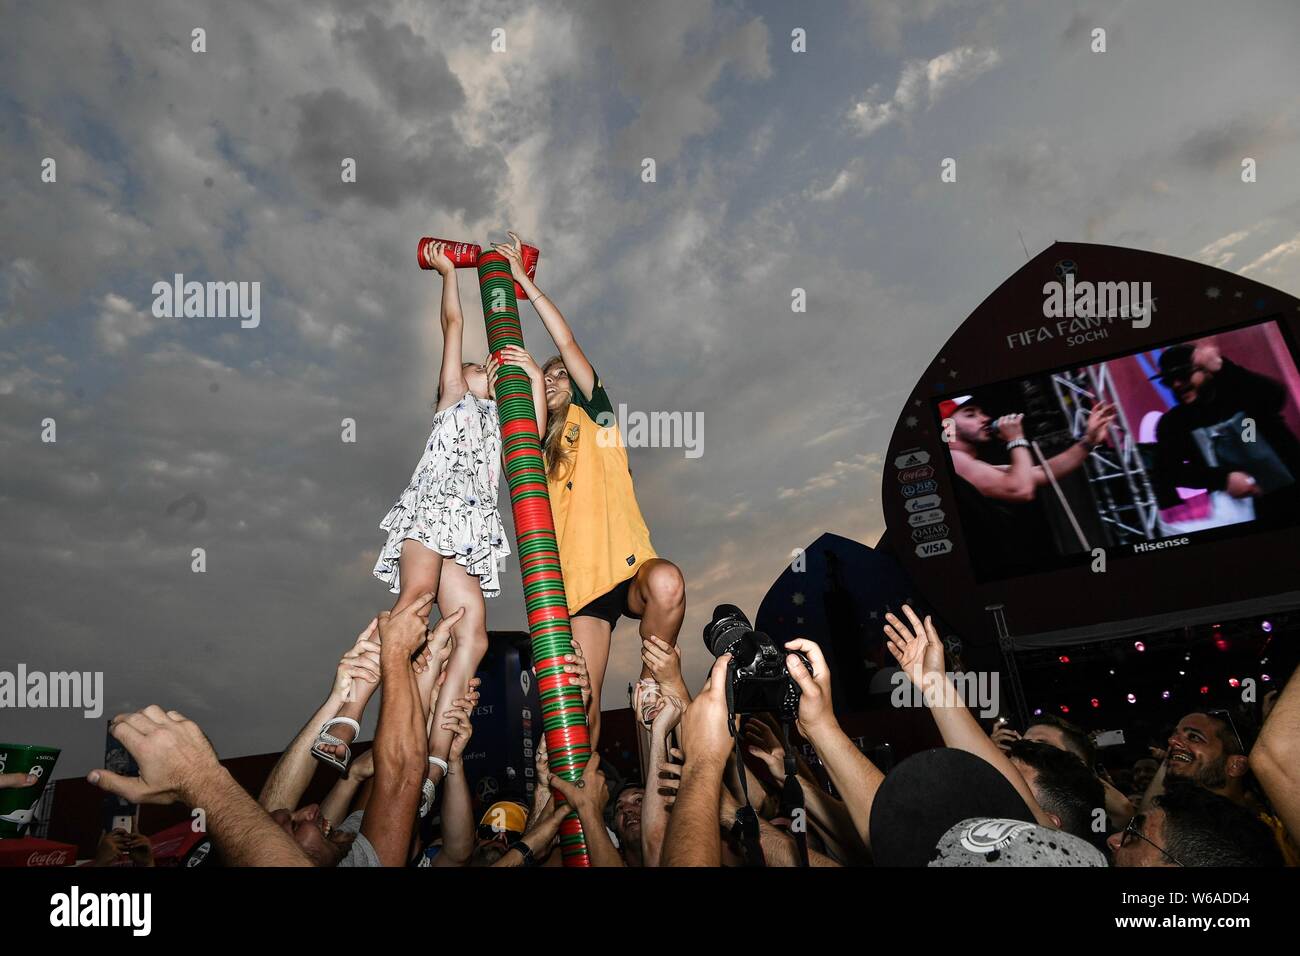 Les fans de football du monde entier font construire une tour humaine afin d'empiler jusqu'à 5 mètres de haut beer cup tour sur un carré à la chaleur de la Coupe du Monde 2018 C Banque D'Images